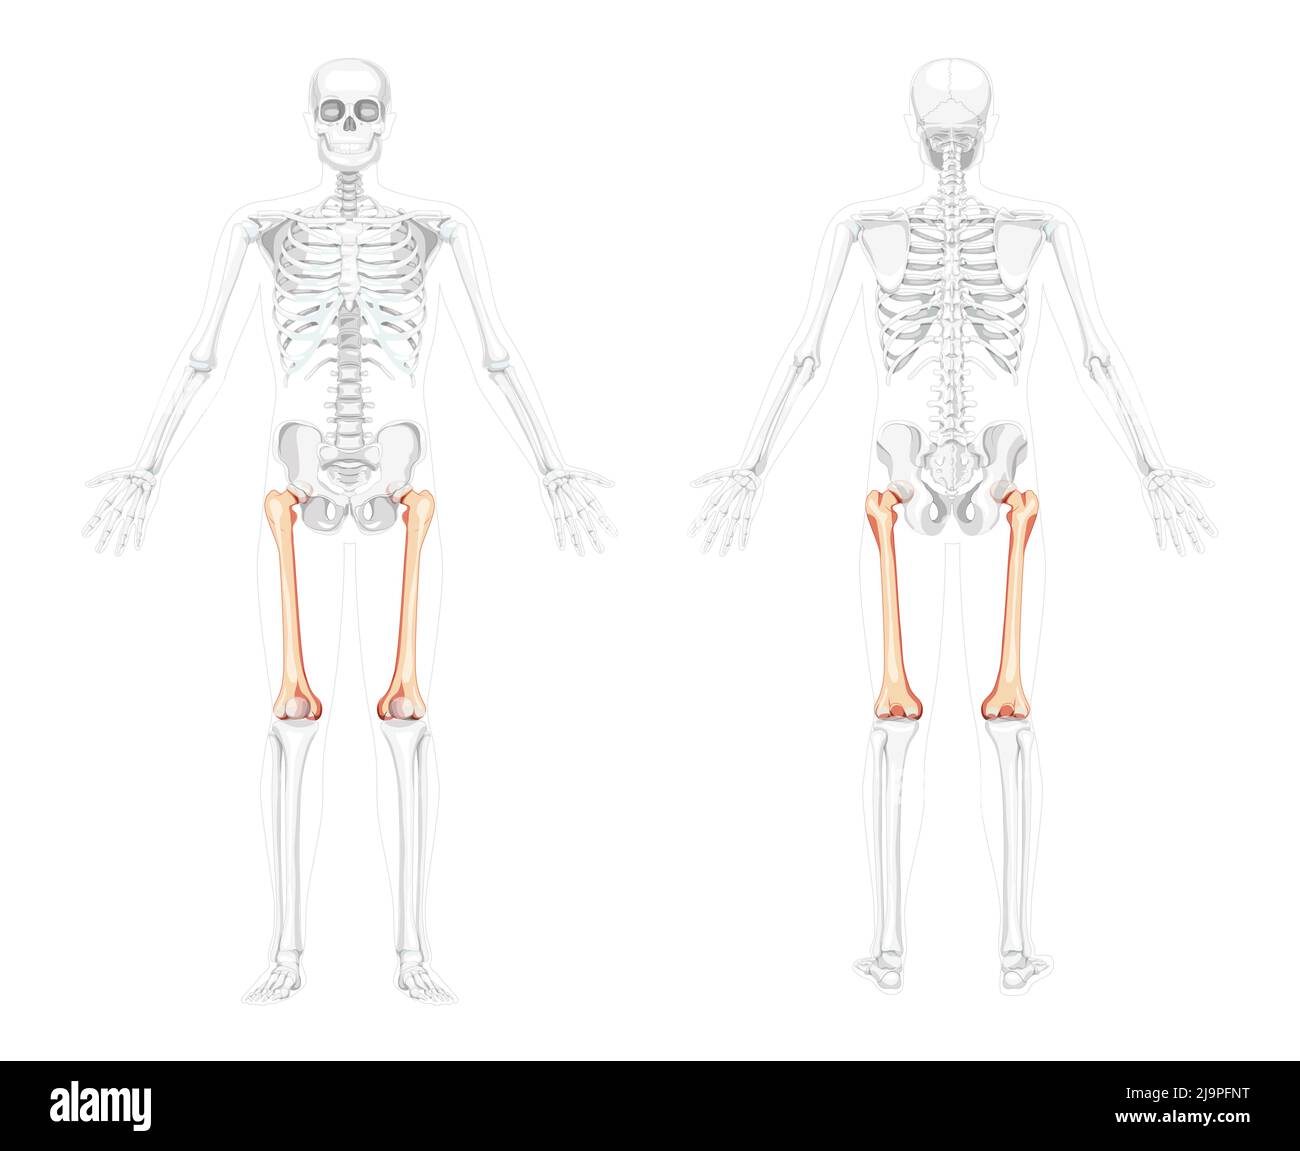 Scheletro femore coscia osso anteriore della coscia Vista posteriore umana con due pose del braccio con posizione delle ossa parzialmente trasparente. Disegno vettoriale di anatomia isolata su sfondo bianco Illustrazione Vettoriale